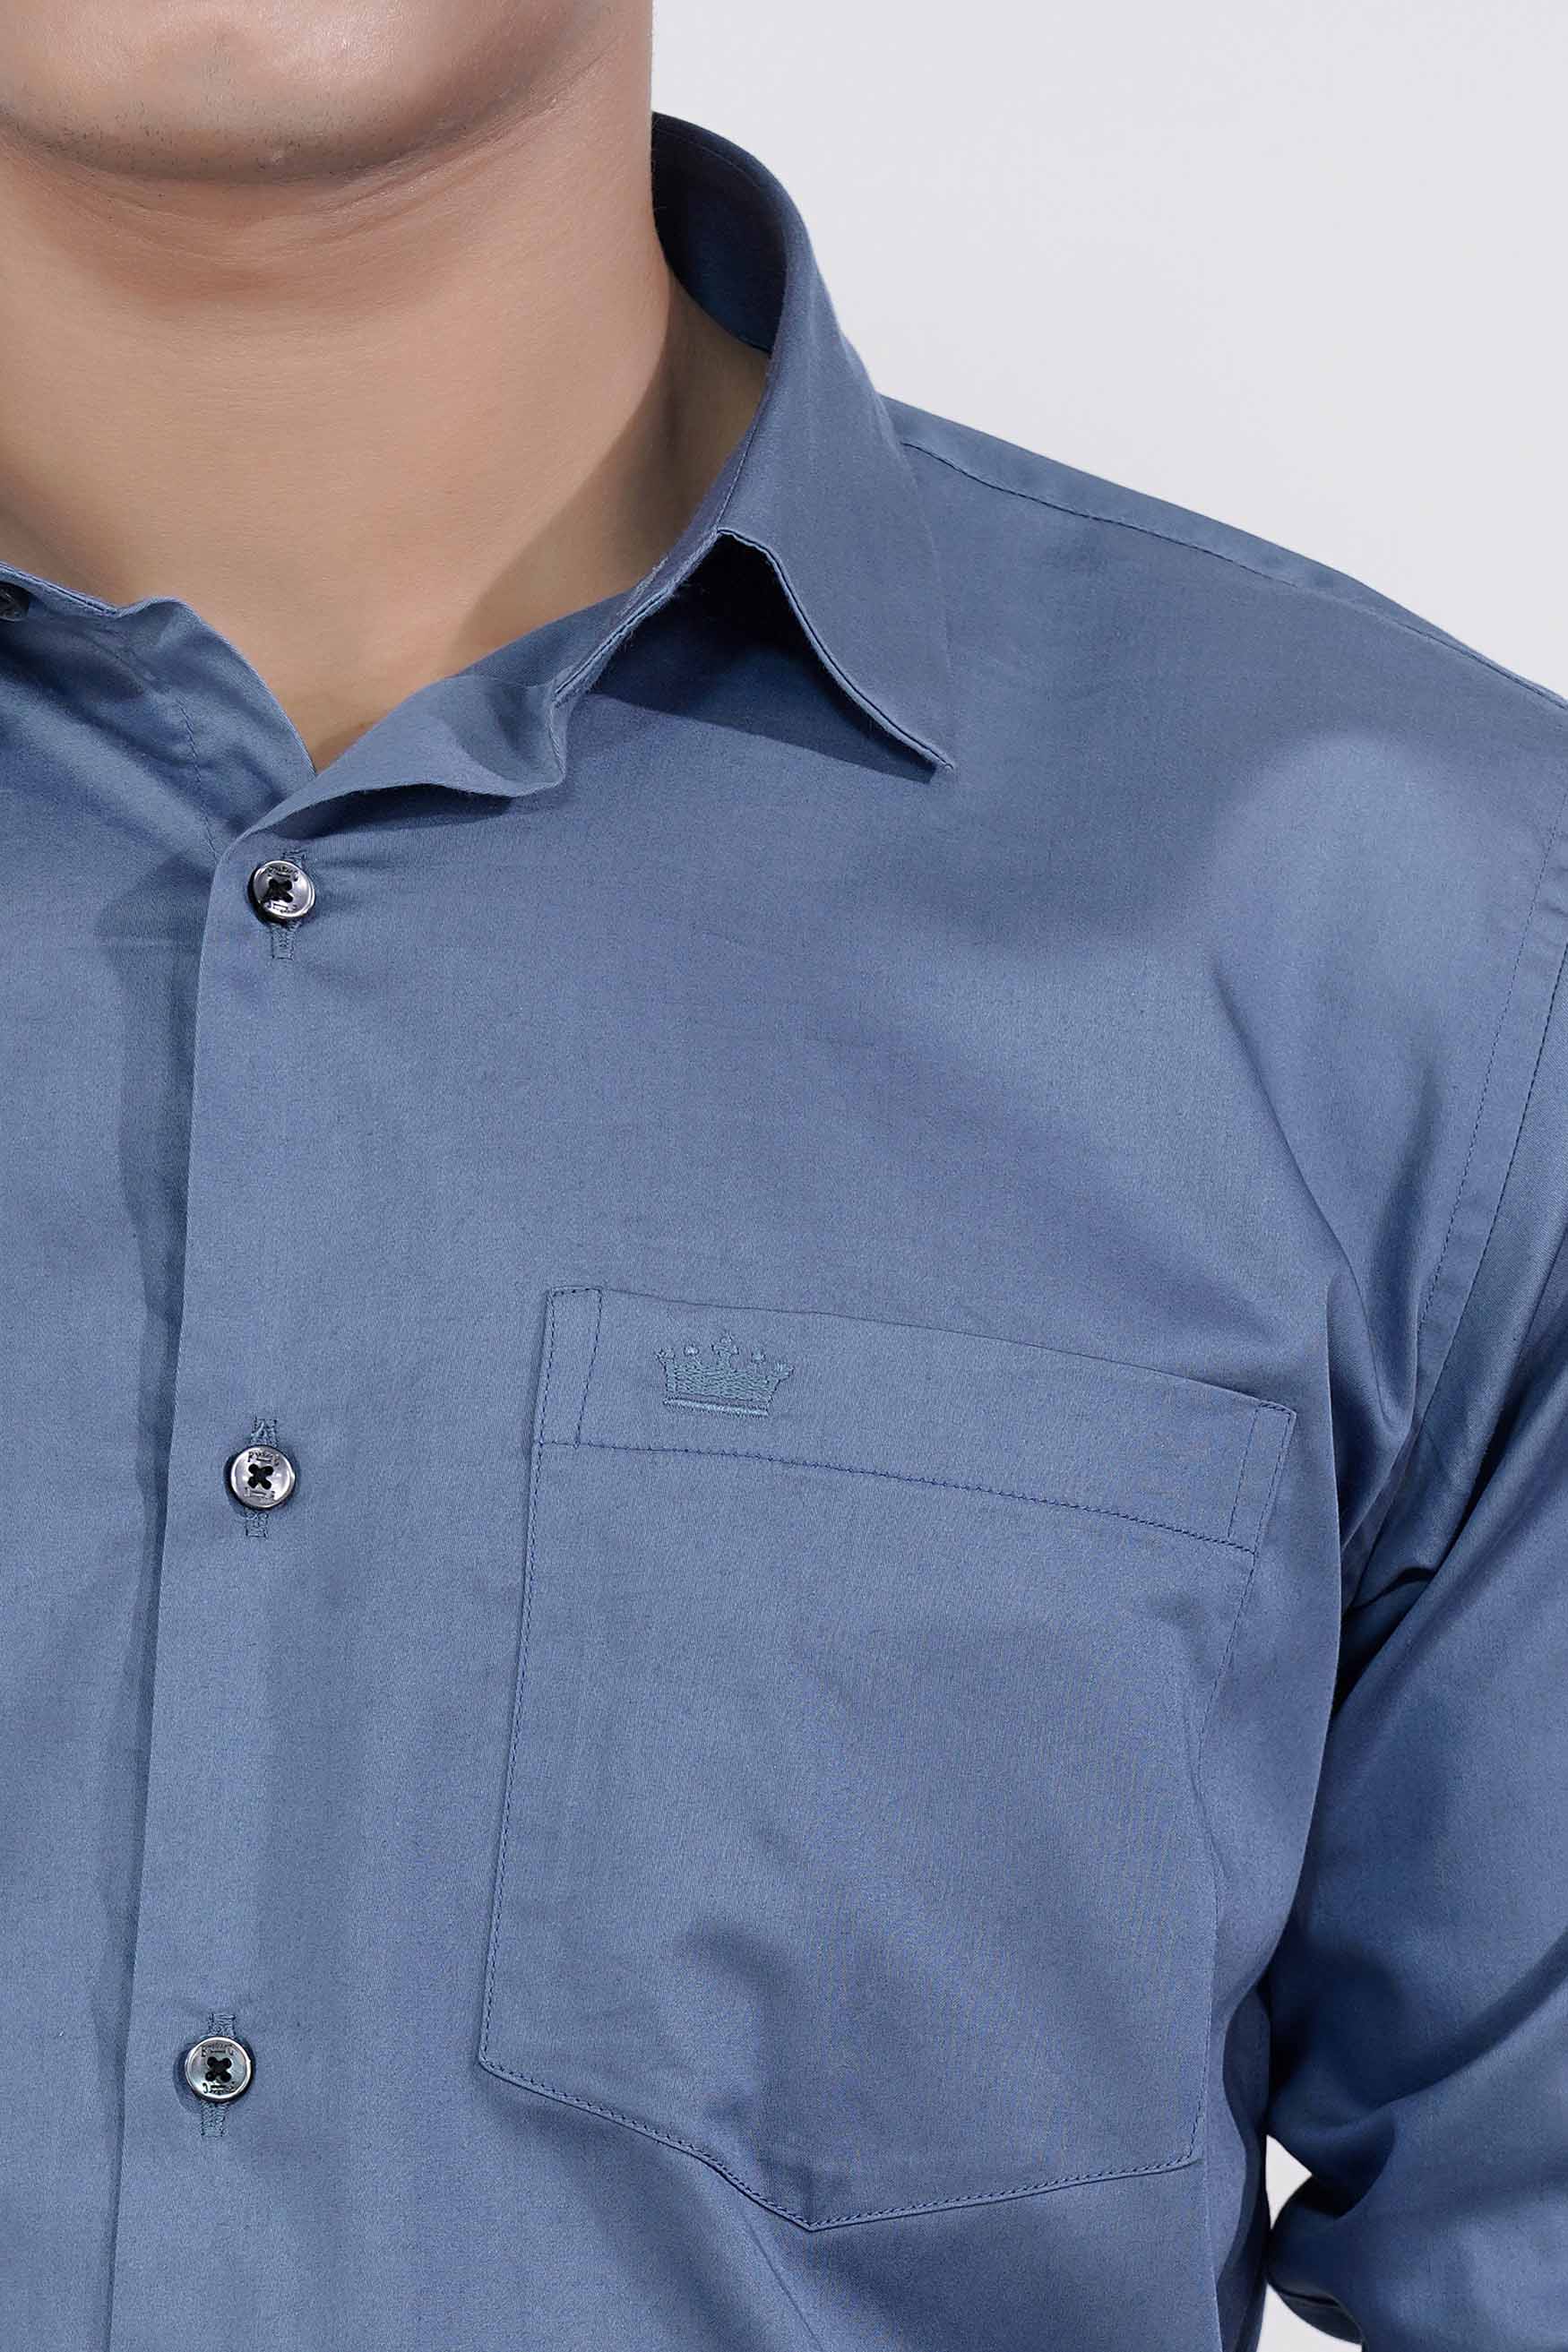 Bluish Subtle Sheen Super Soft Premium Cotton Shirt